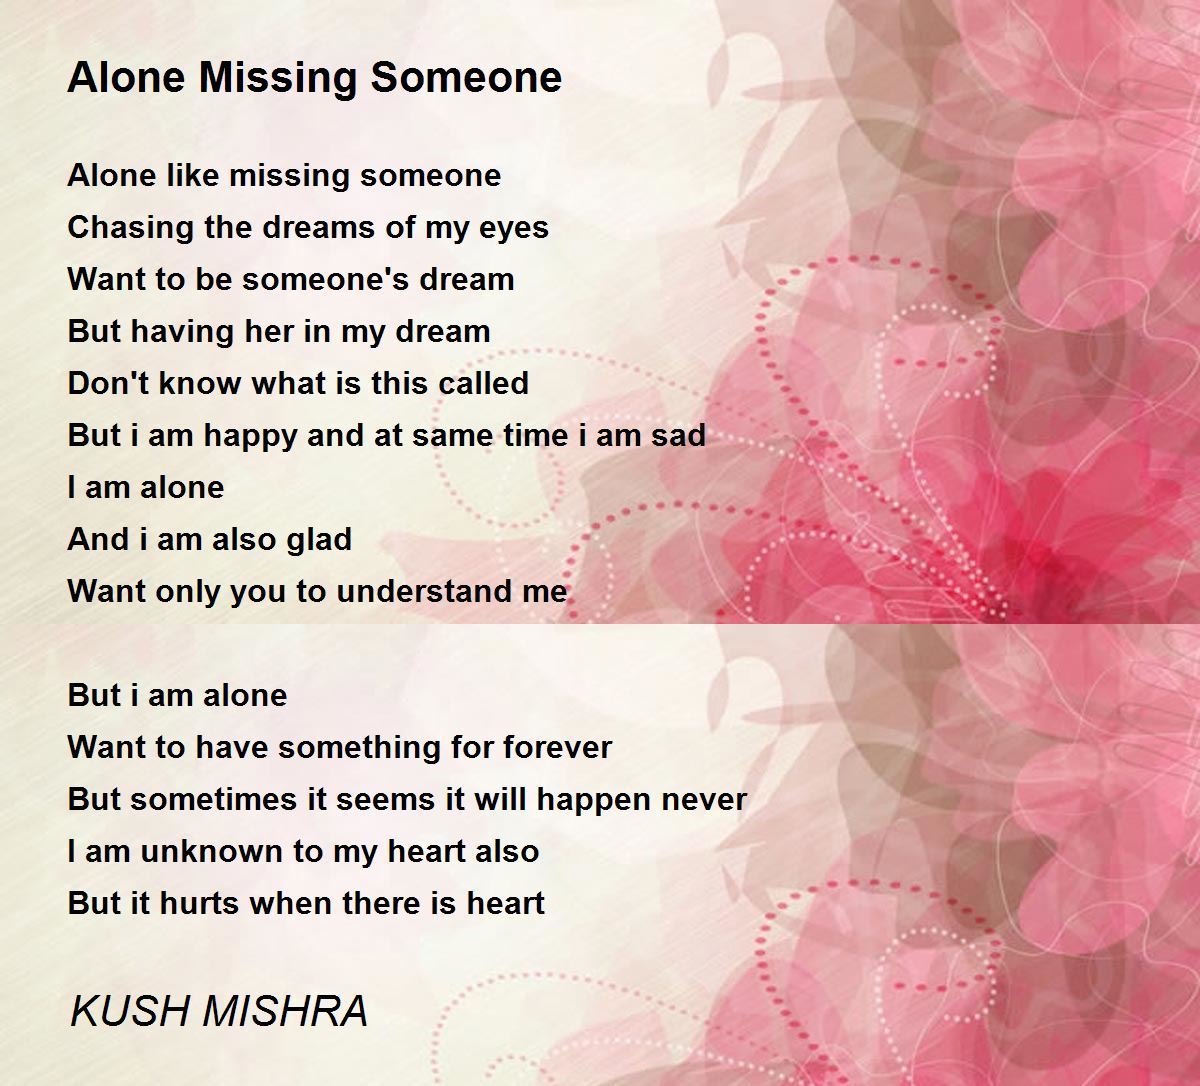 Alone Missing Someone - Alone Missing Someone Poem by KUSH MISHRA